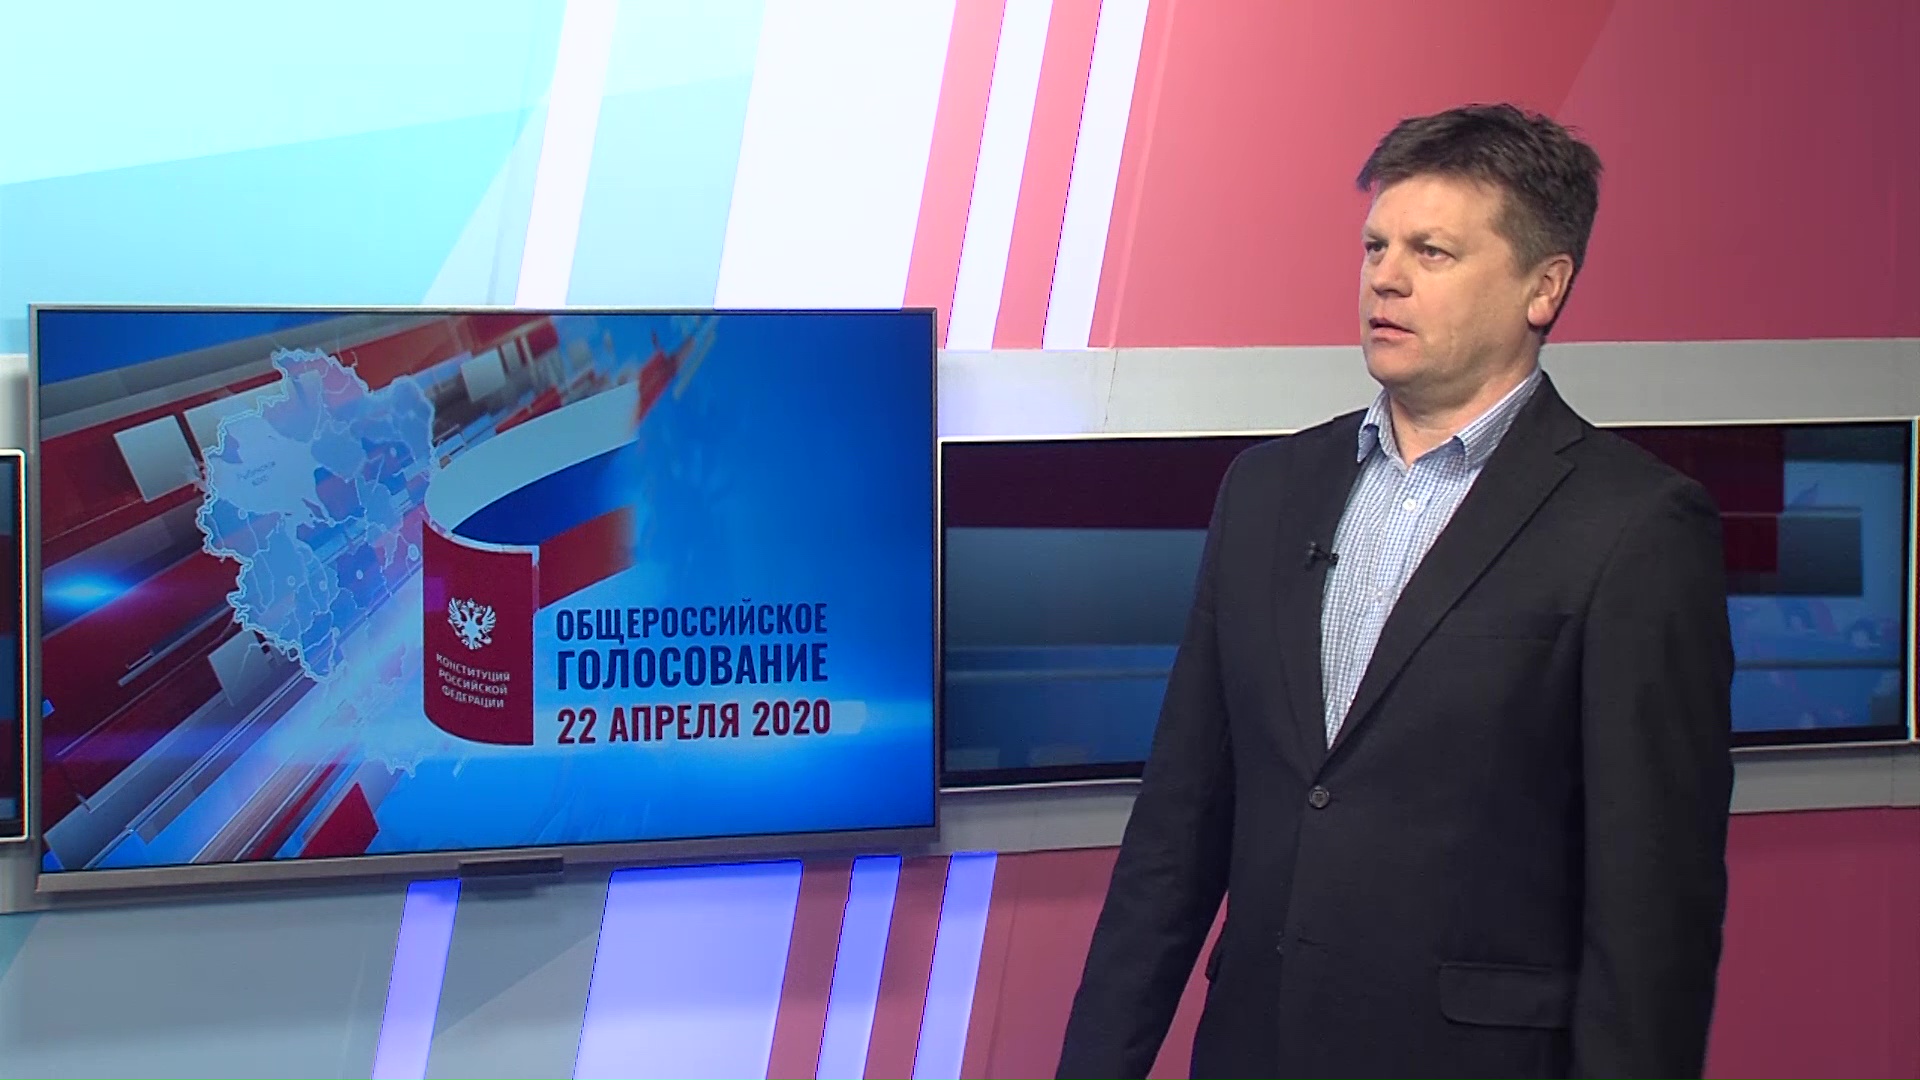 Евгений Голубев: «Мне кажется, нужно выразить гражданскую позицию и высказать свое мнение по поводу поправок в Конституцию»